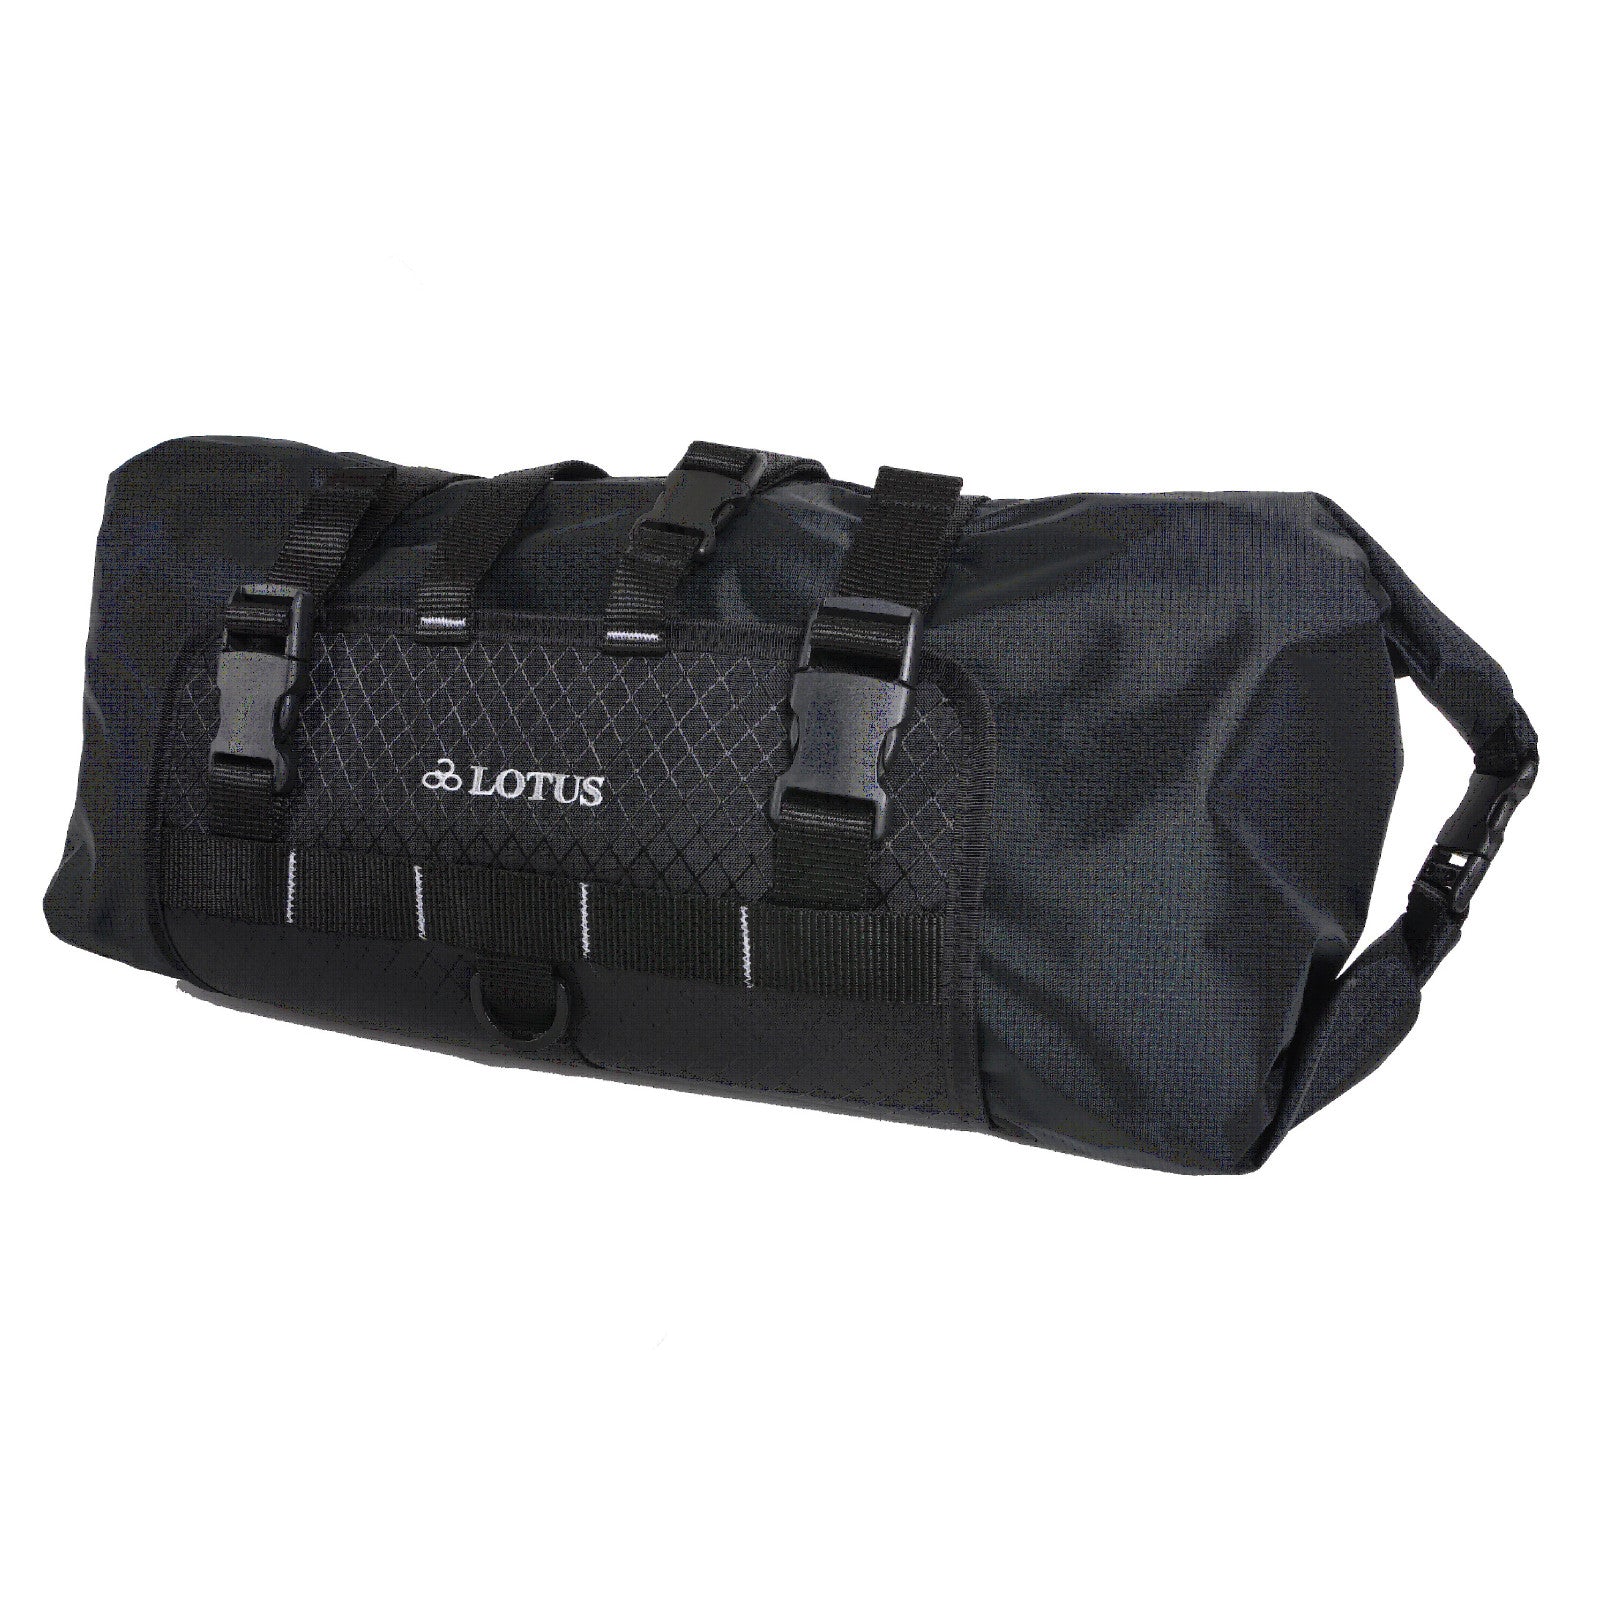 Lotus Explorer Dry Bag 8.8L Black Handlebar Mounted Bag